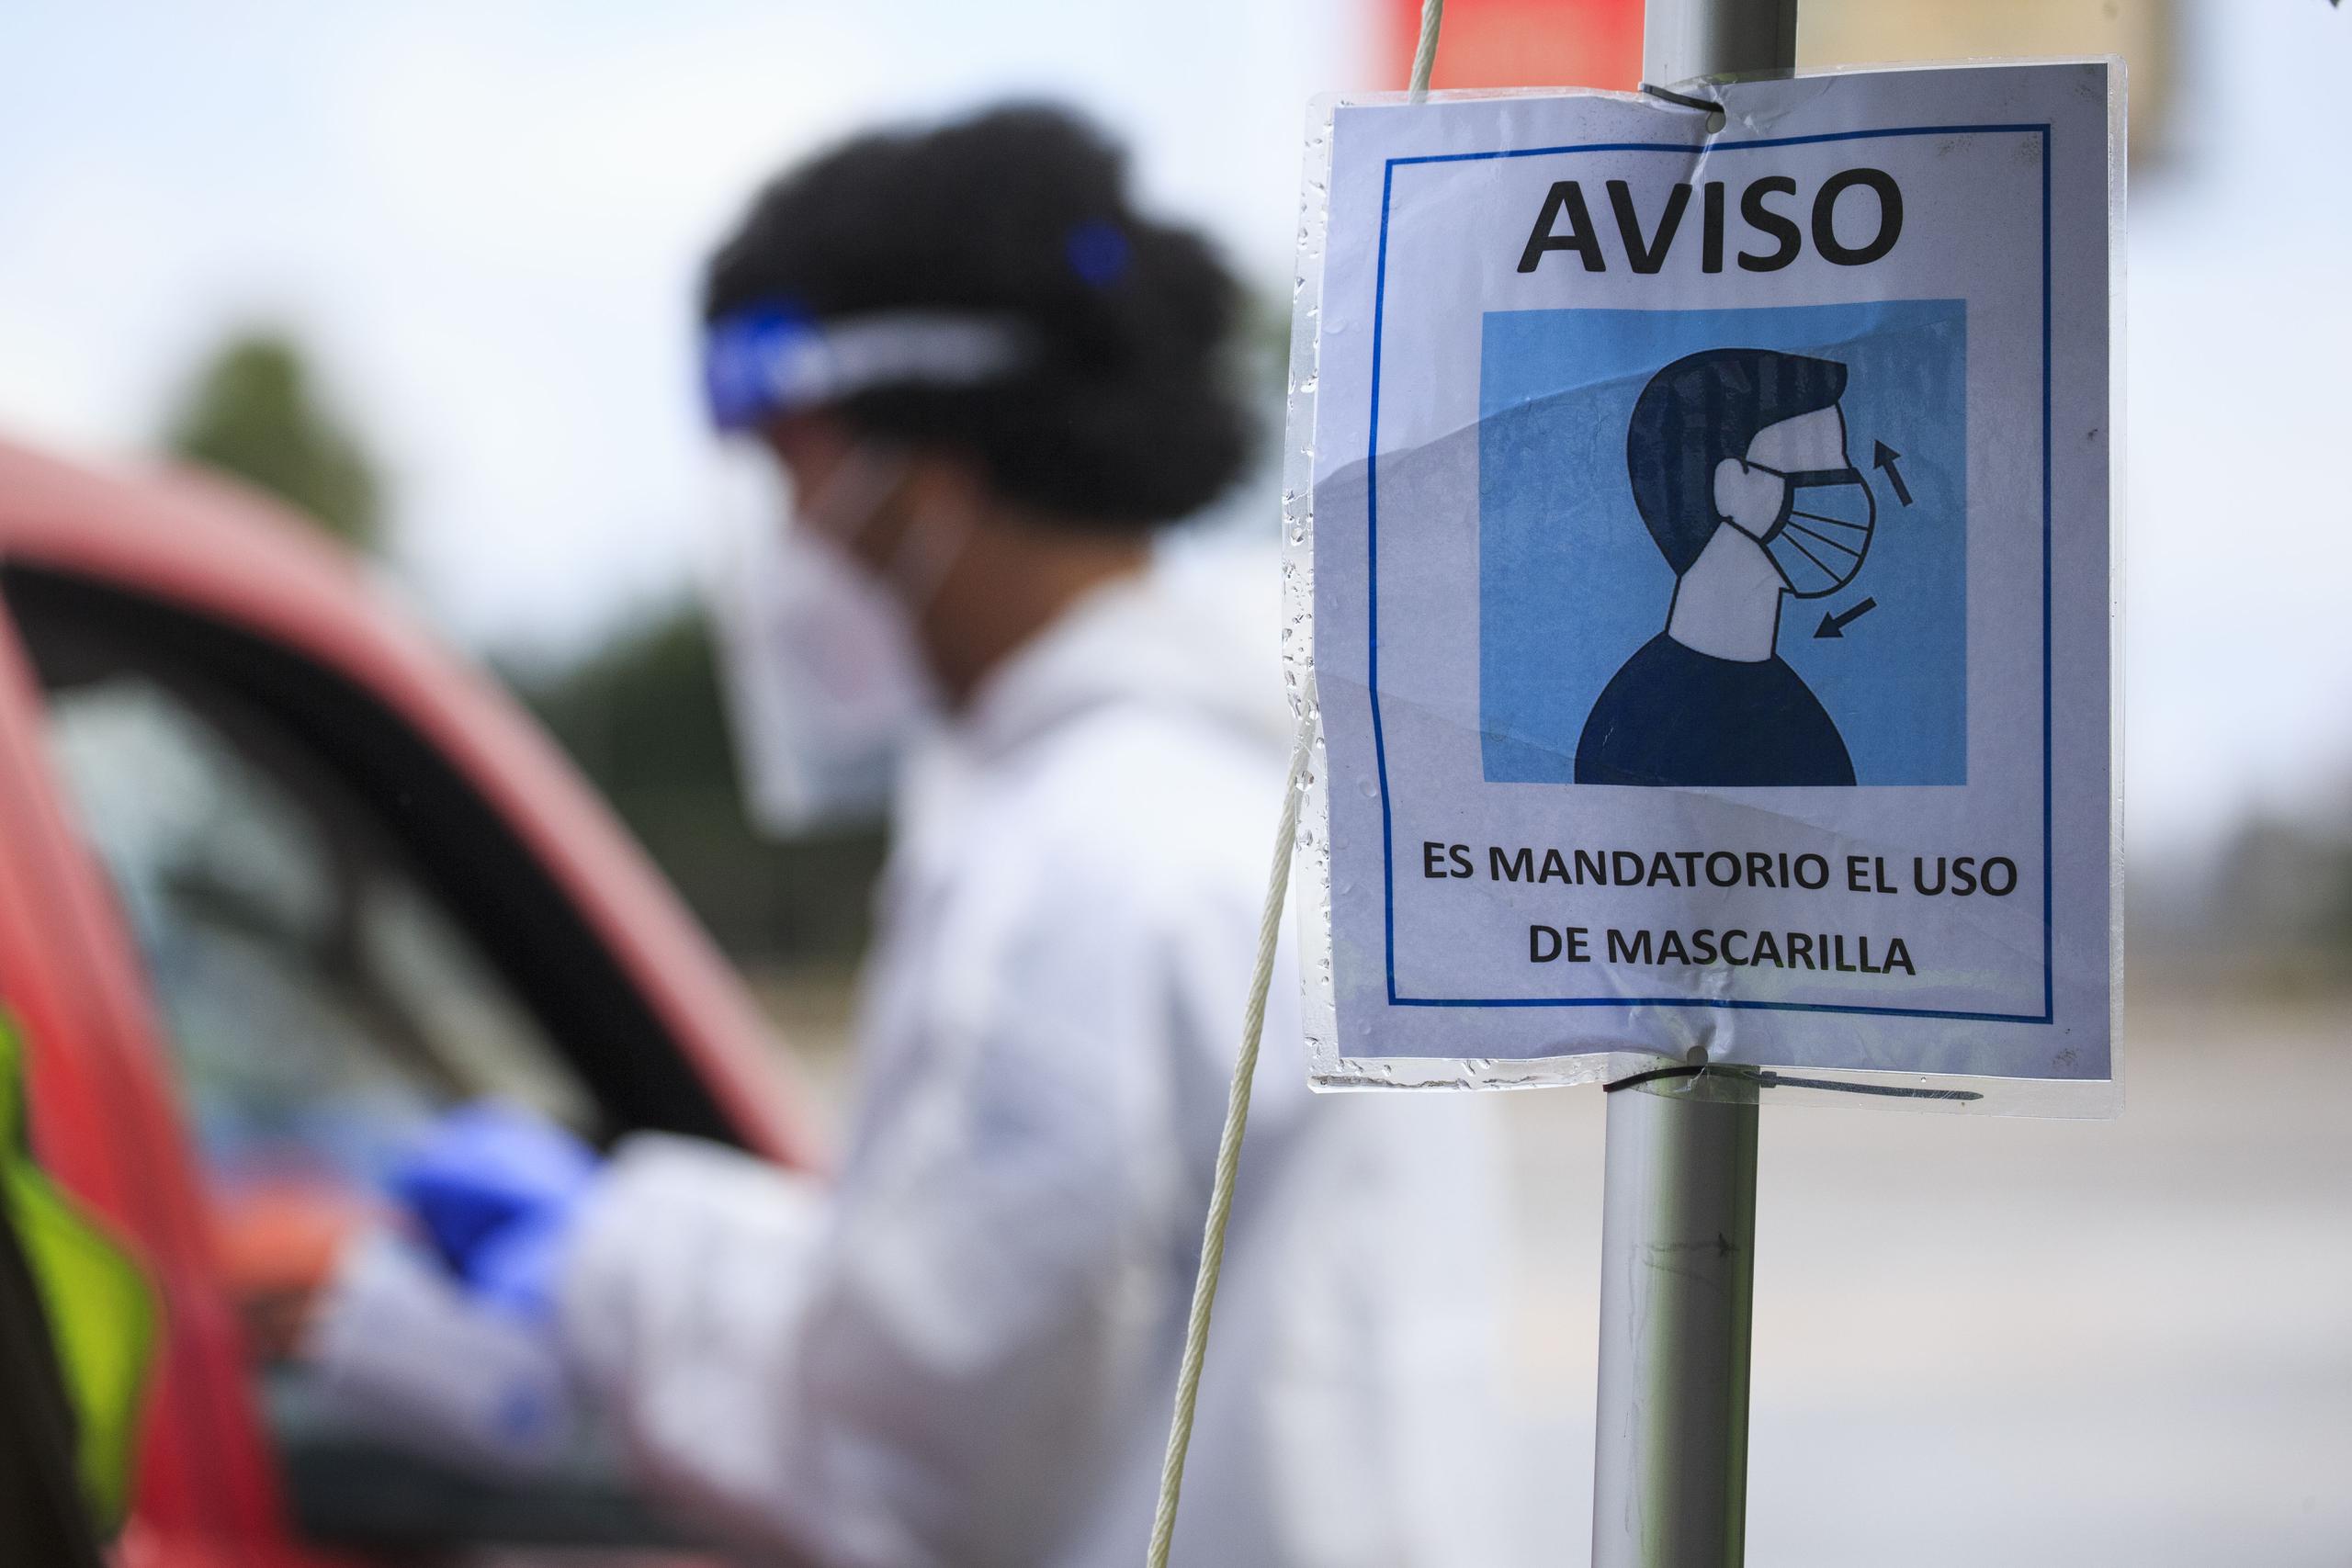 El Task Force Ciudadano celebró la decisión de exigir uso de mascarillas en espacios cerrados ante el repunte de la pandemia.